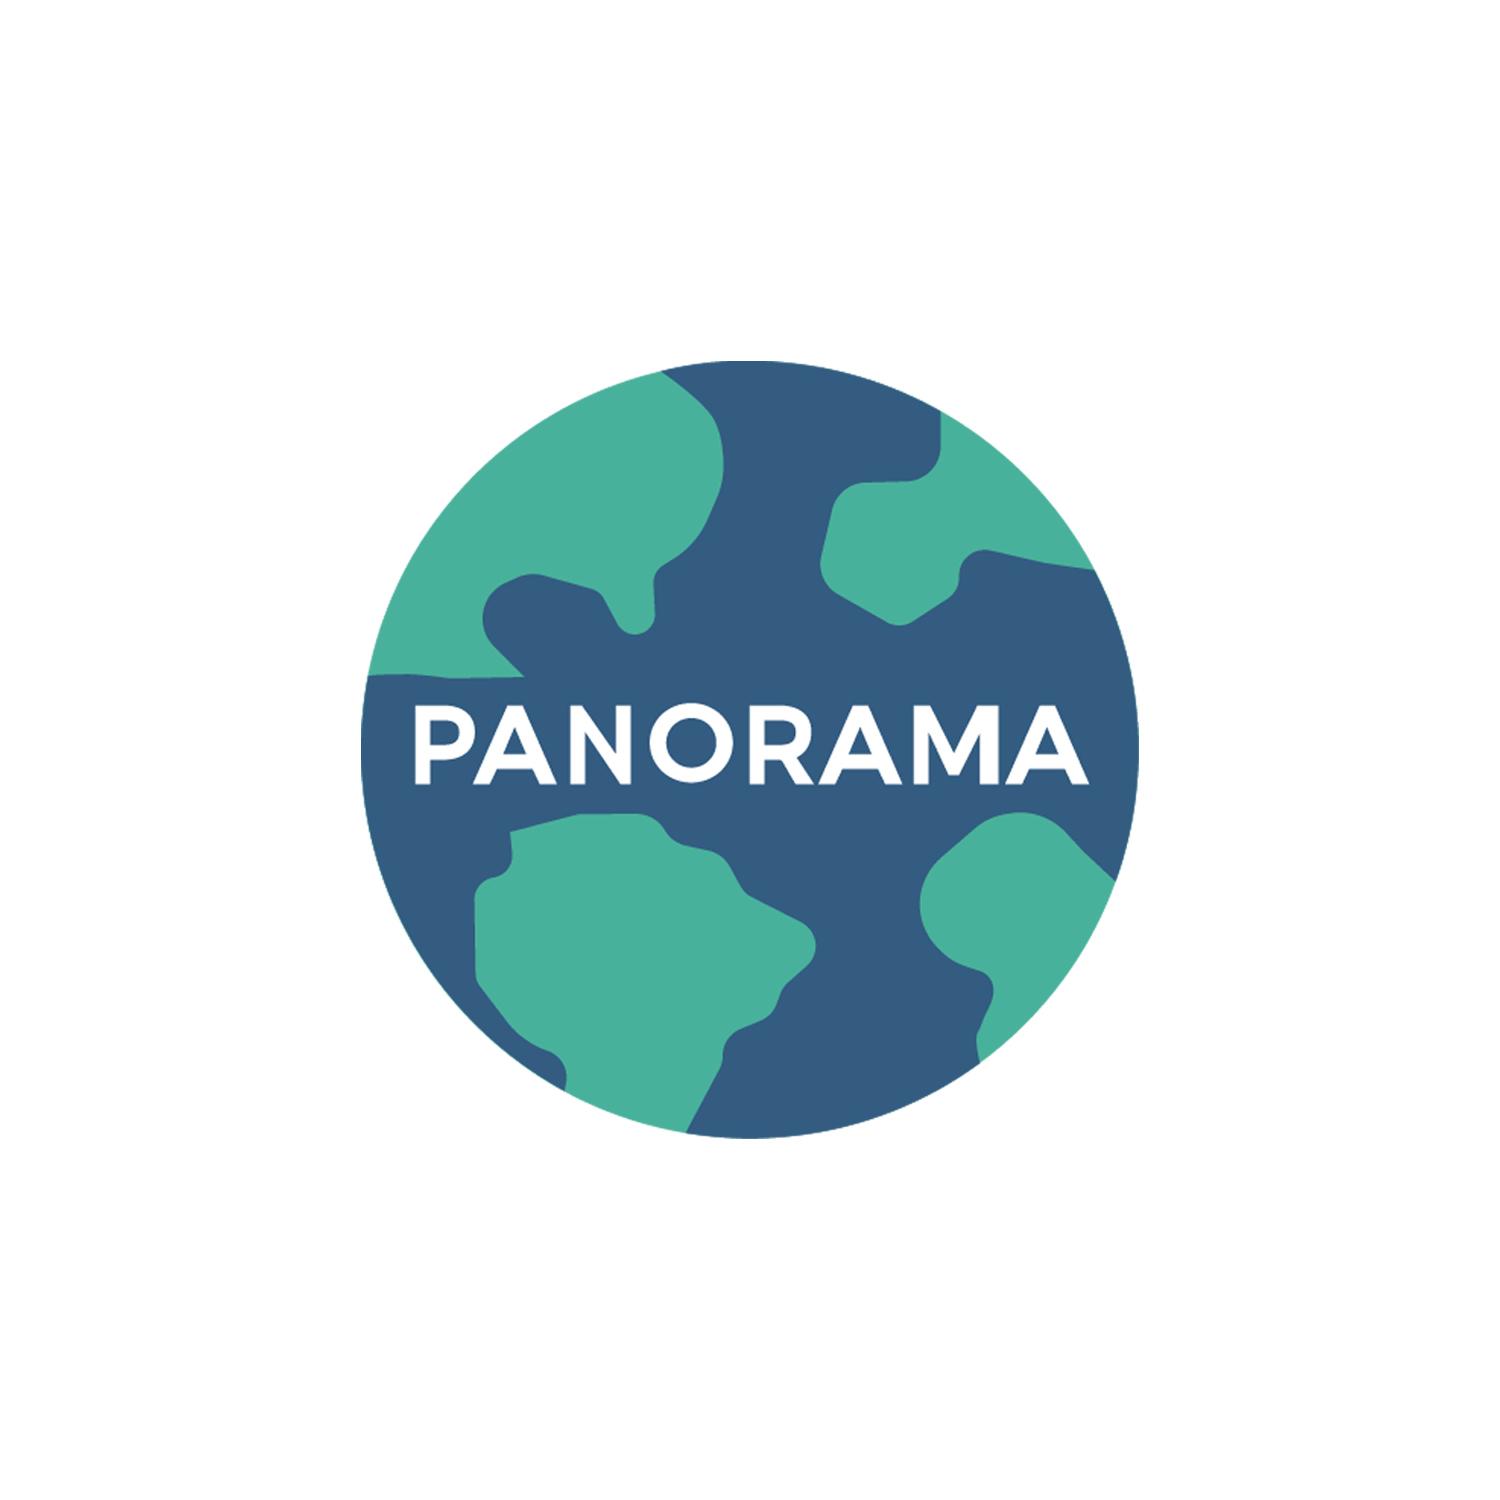 Product Panorama - Un tour du monde à 360° - Digital Immersion image